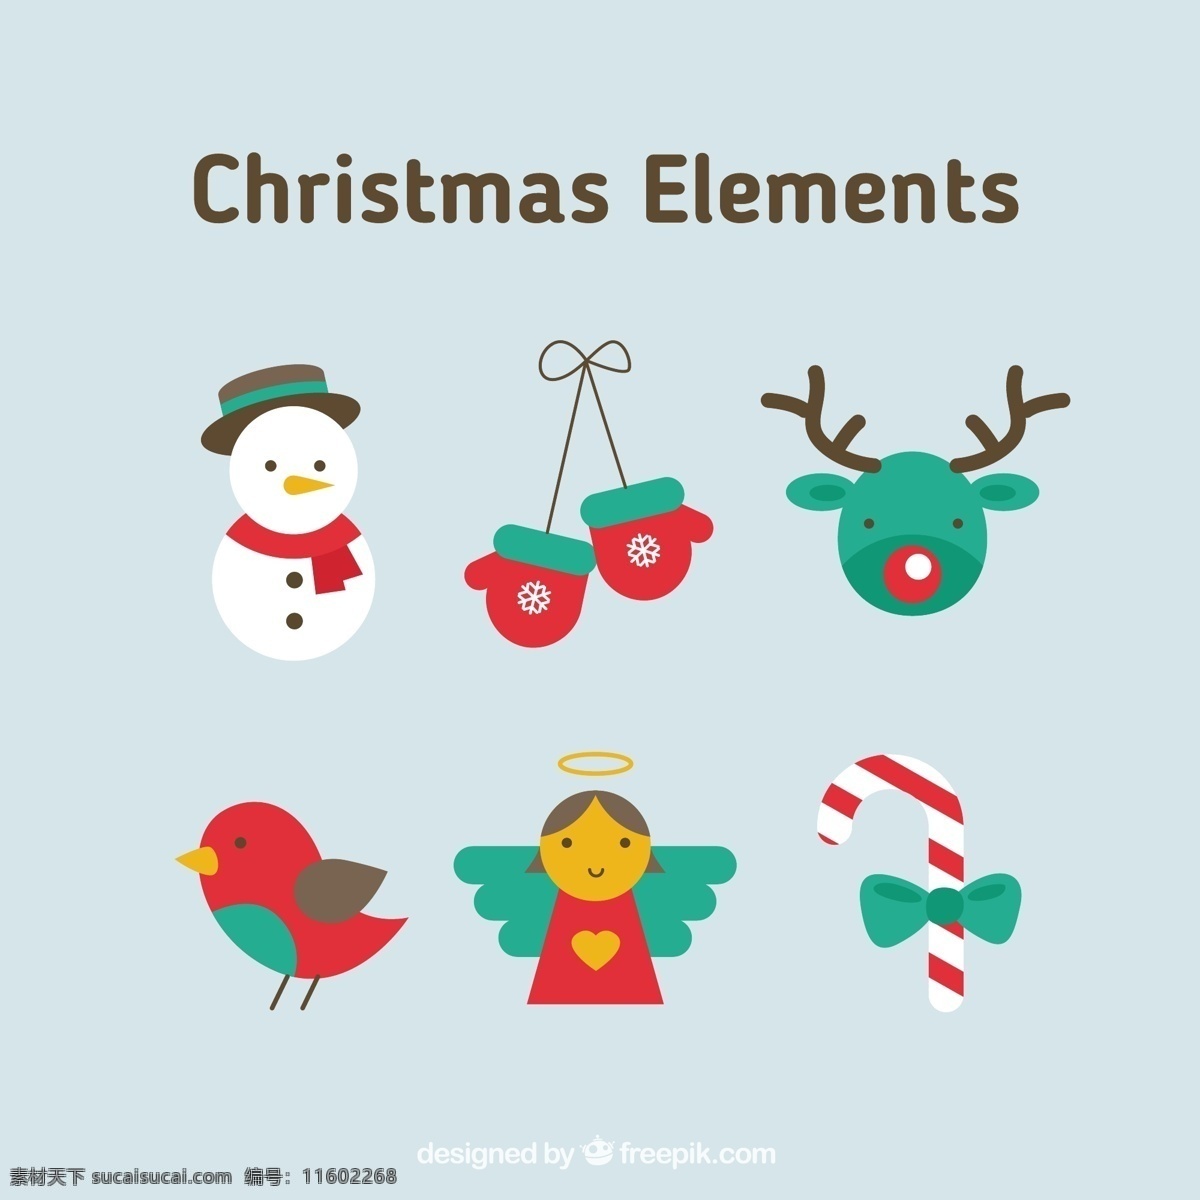 圣诞节 元素 集合 鸟 绿色的图标 圣诞快乐 冬天 天使 快乐 糖果 红 庆祝节日 雪人 驯鹿 节日快乐 白色 图标集 糖果手杖 青色 天蓝色